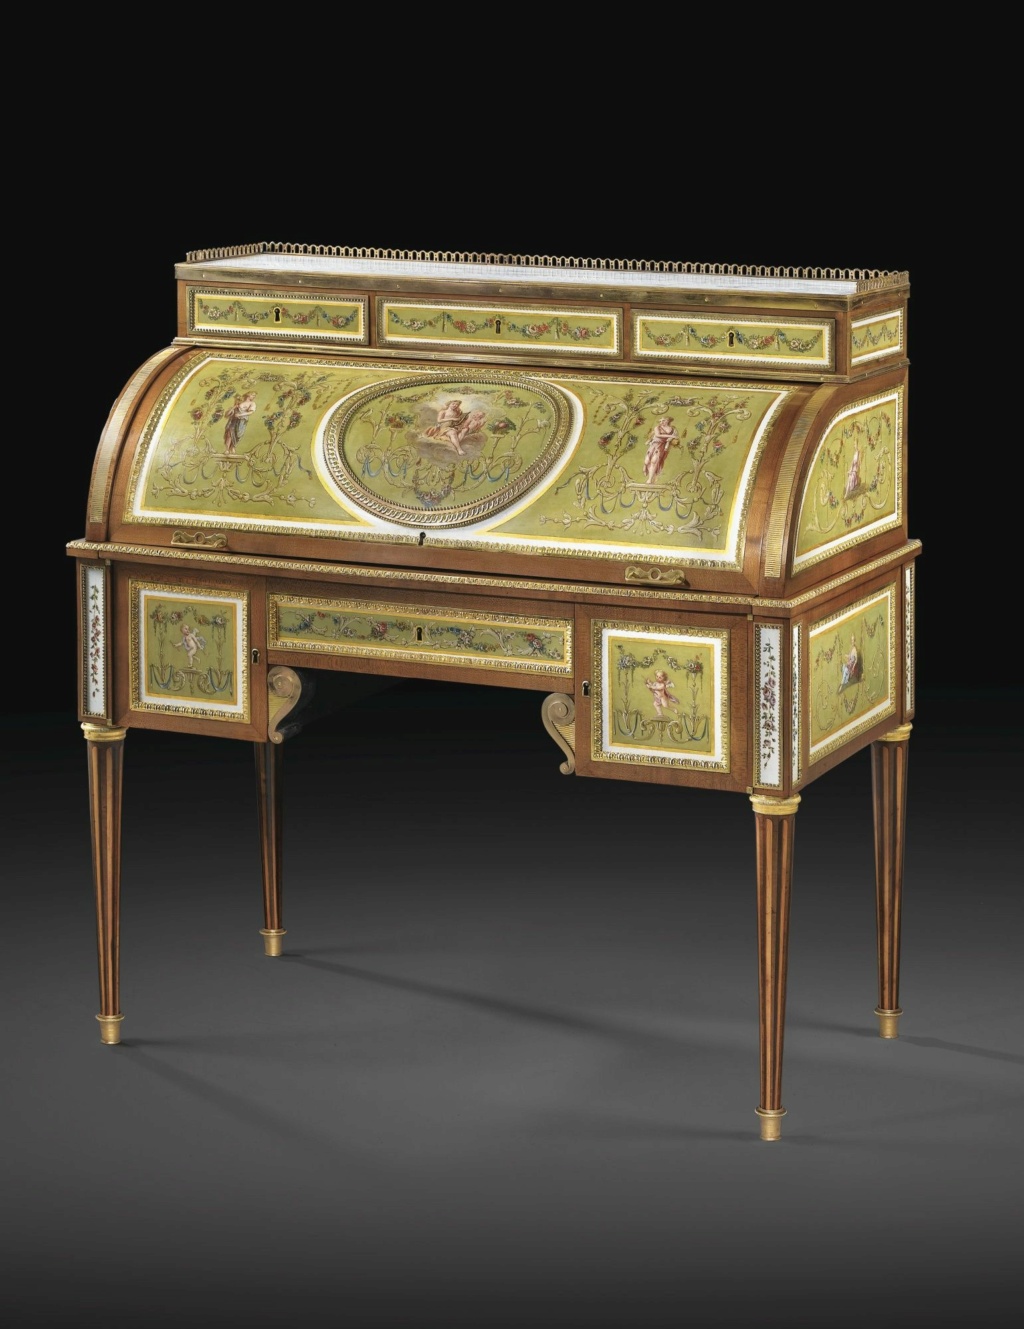 tôle - Mobilier du XVIIIe siècle décoré de tôle peinte et vernie 0307ae10